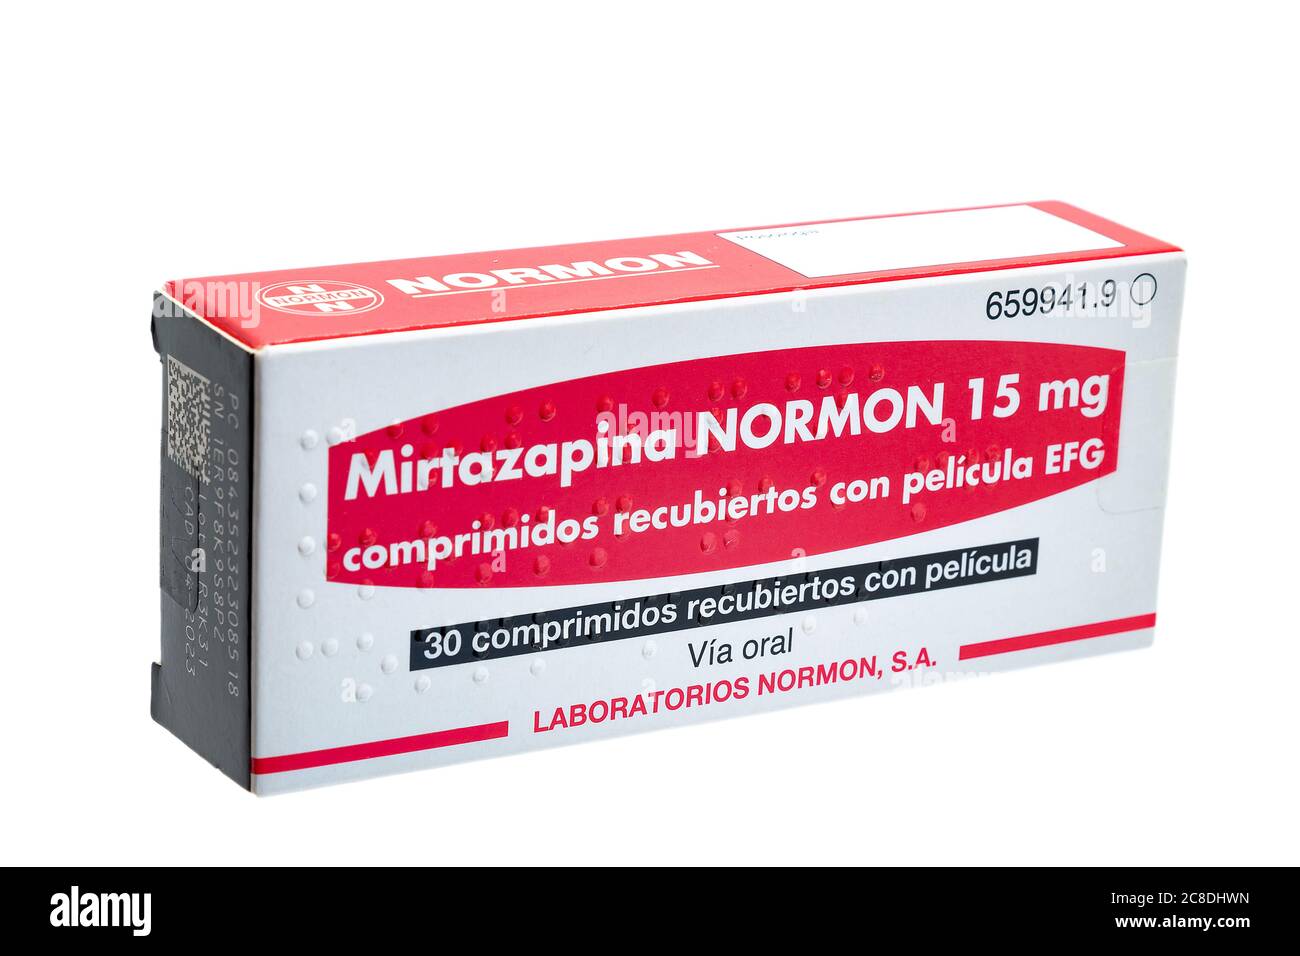 Huelva, Spanien - 23. Juli 2020: Spanische Schachtel mit Mirtazapin Normon. Es ist ein Antidepressivum Medizin. Es wird verwendet, um Depressionen und manchmal Obsession zu behandeln Stockfoto